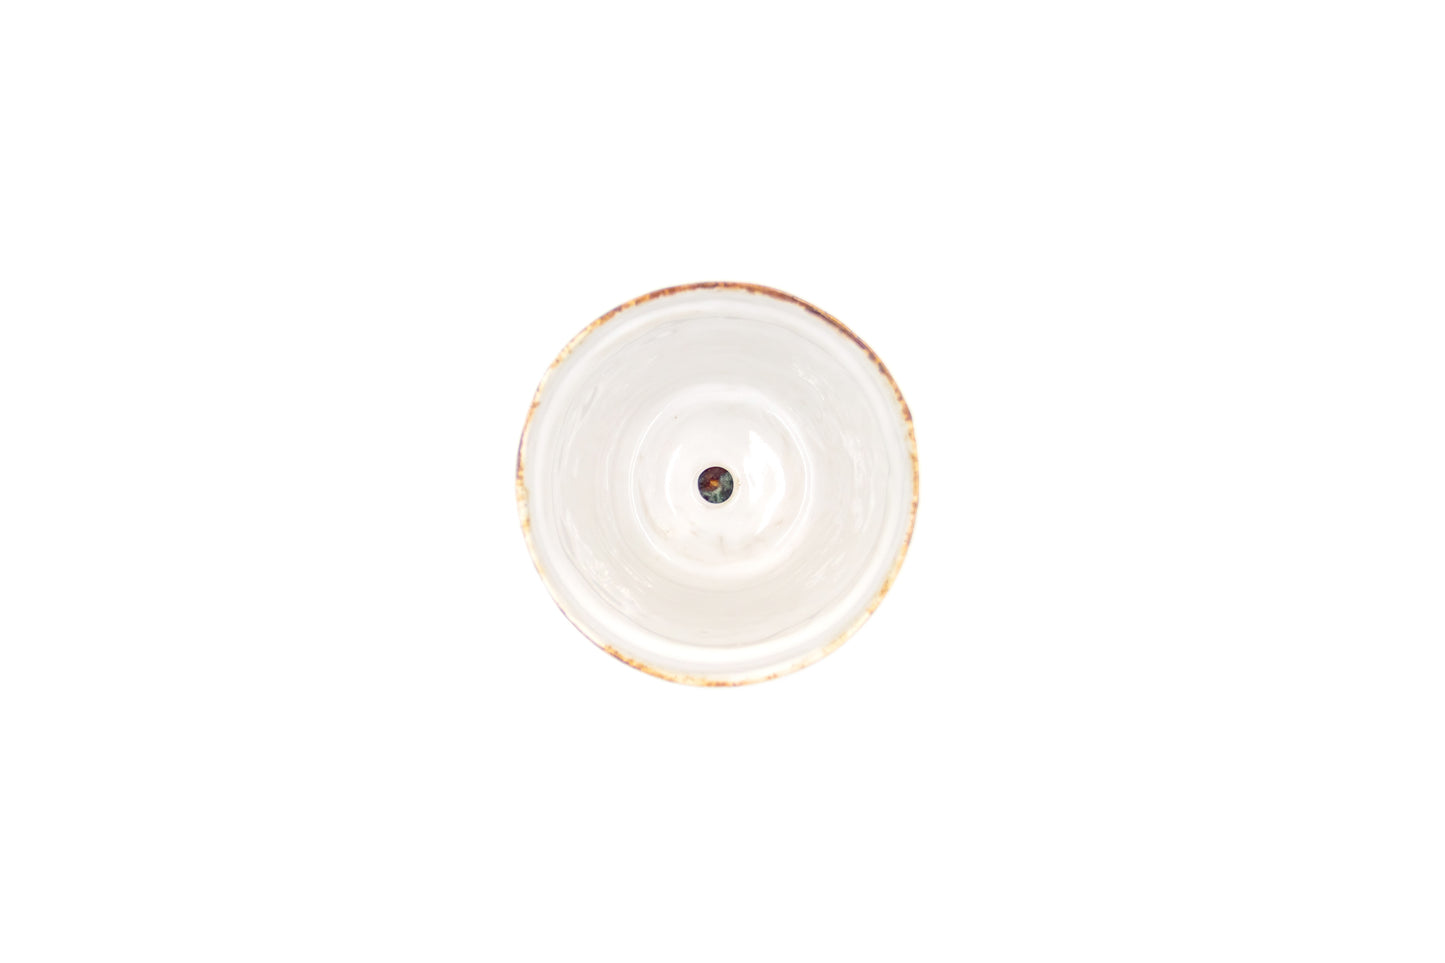 Mała doniczka ceramiczna w kolorze brązowo-białym